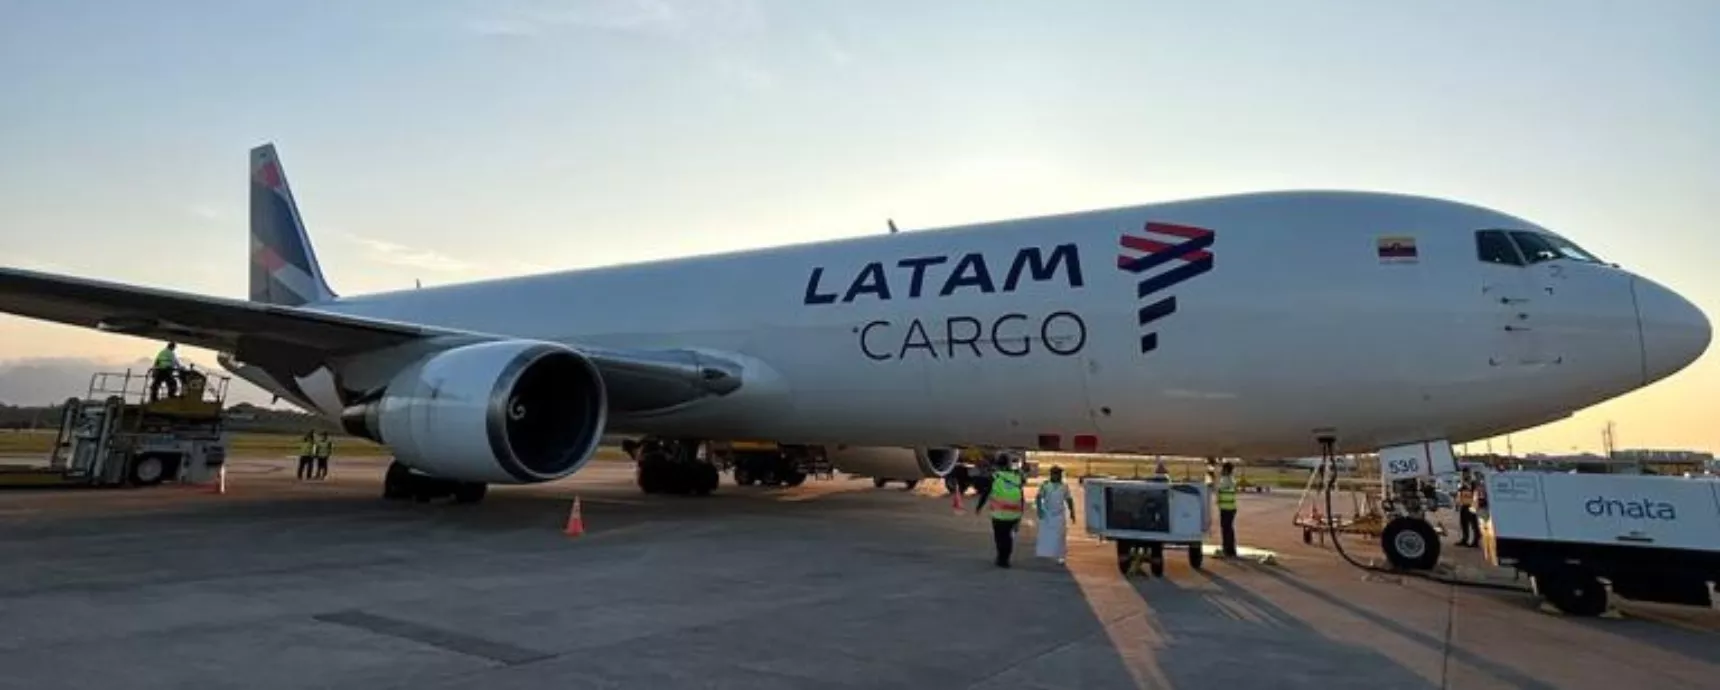 Floripa Airport Cargo erhält vierte wöchentliche Frequenz